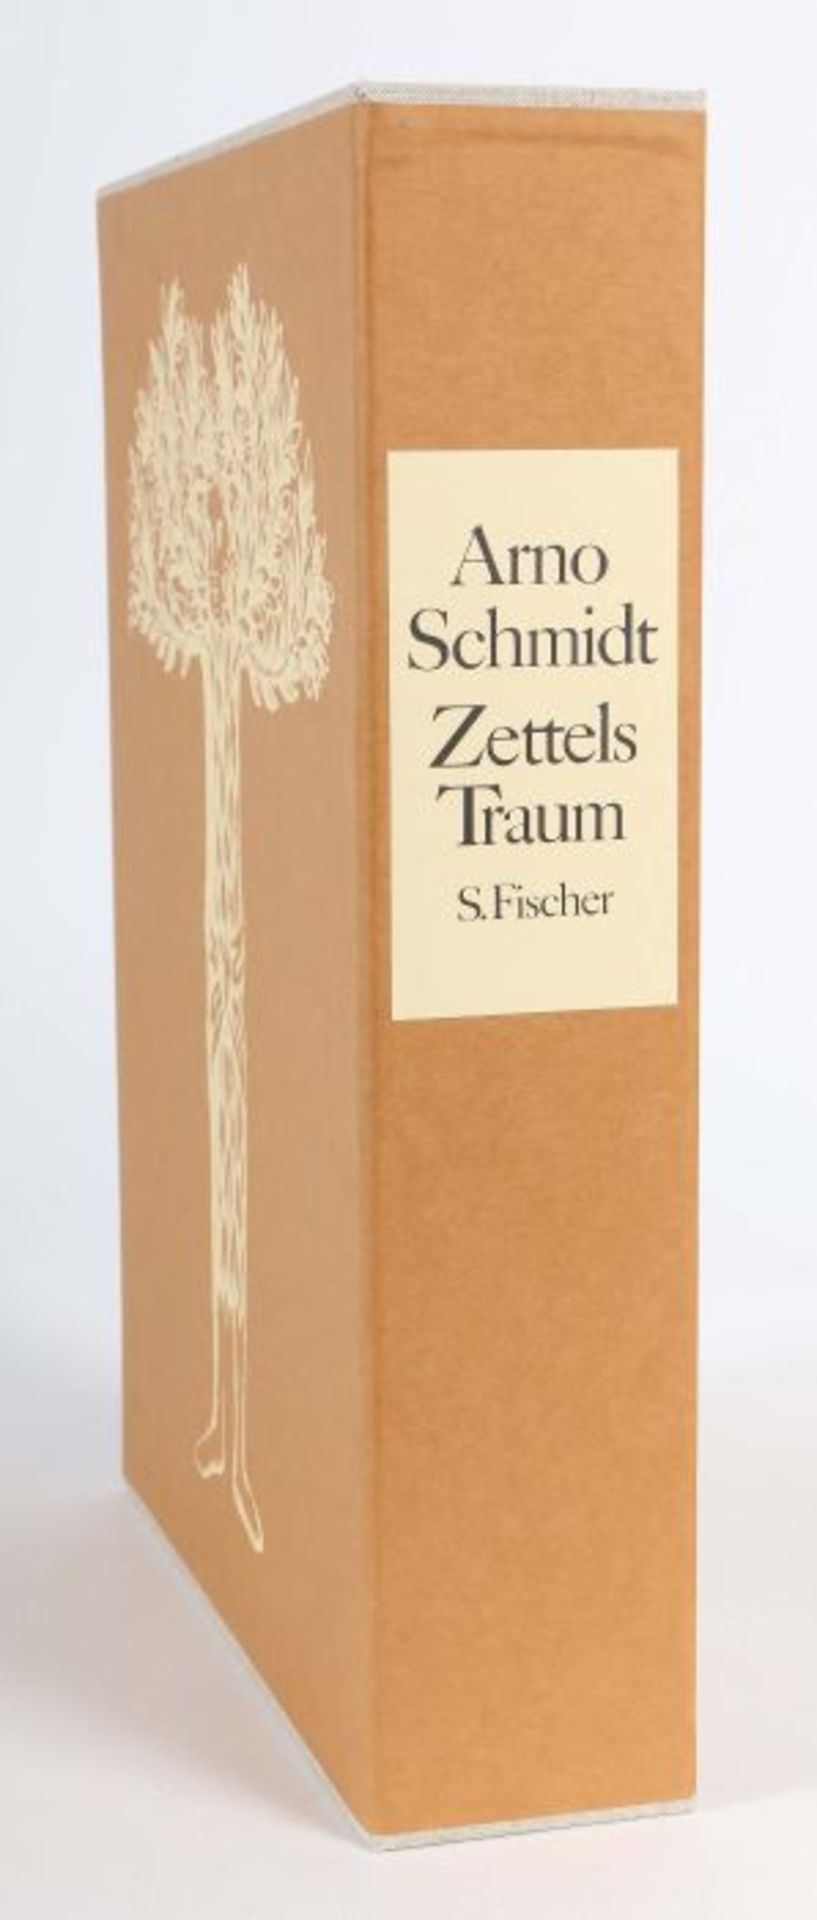 Schmidt, ArnoZettels Traum, Frankfurt, S. Fischer, 1986, 2. Auflage der Studienausgabe in 8 Heften, - Bild 3 aus 4